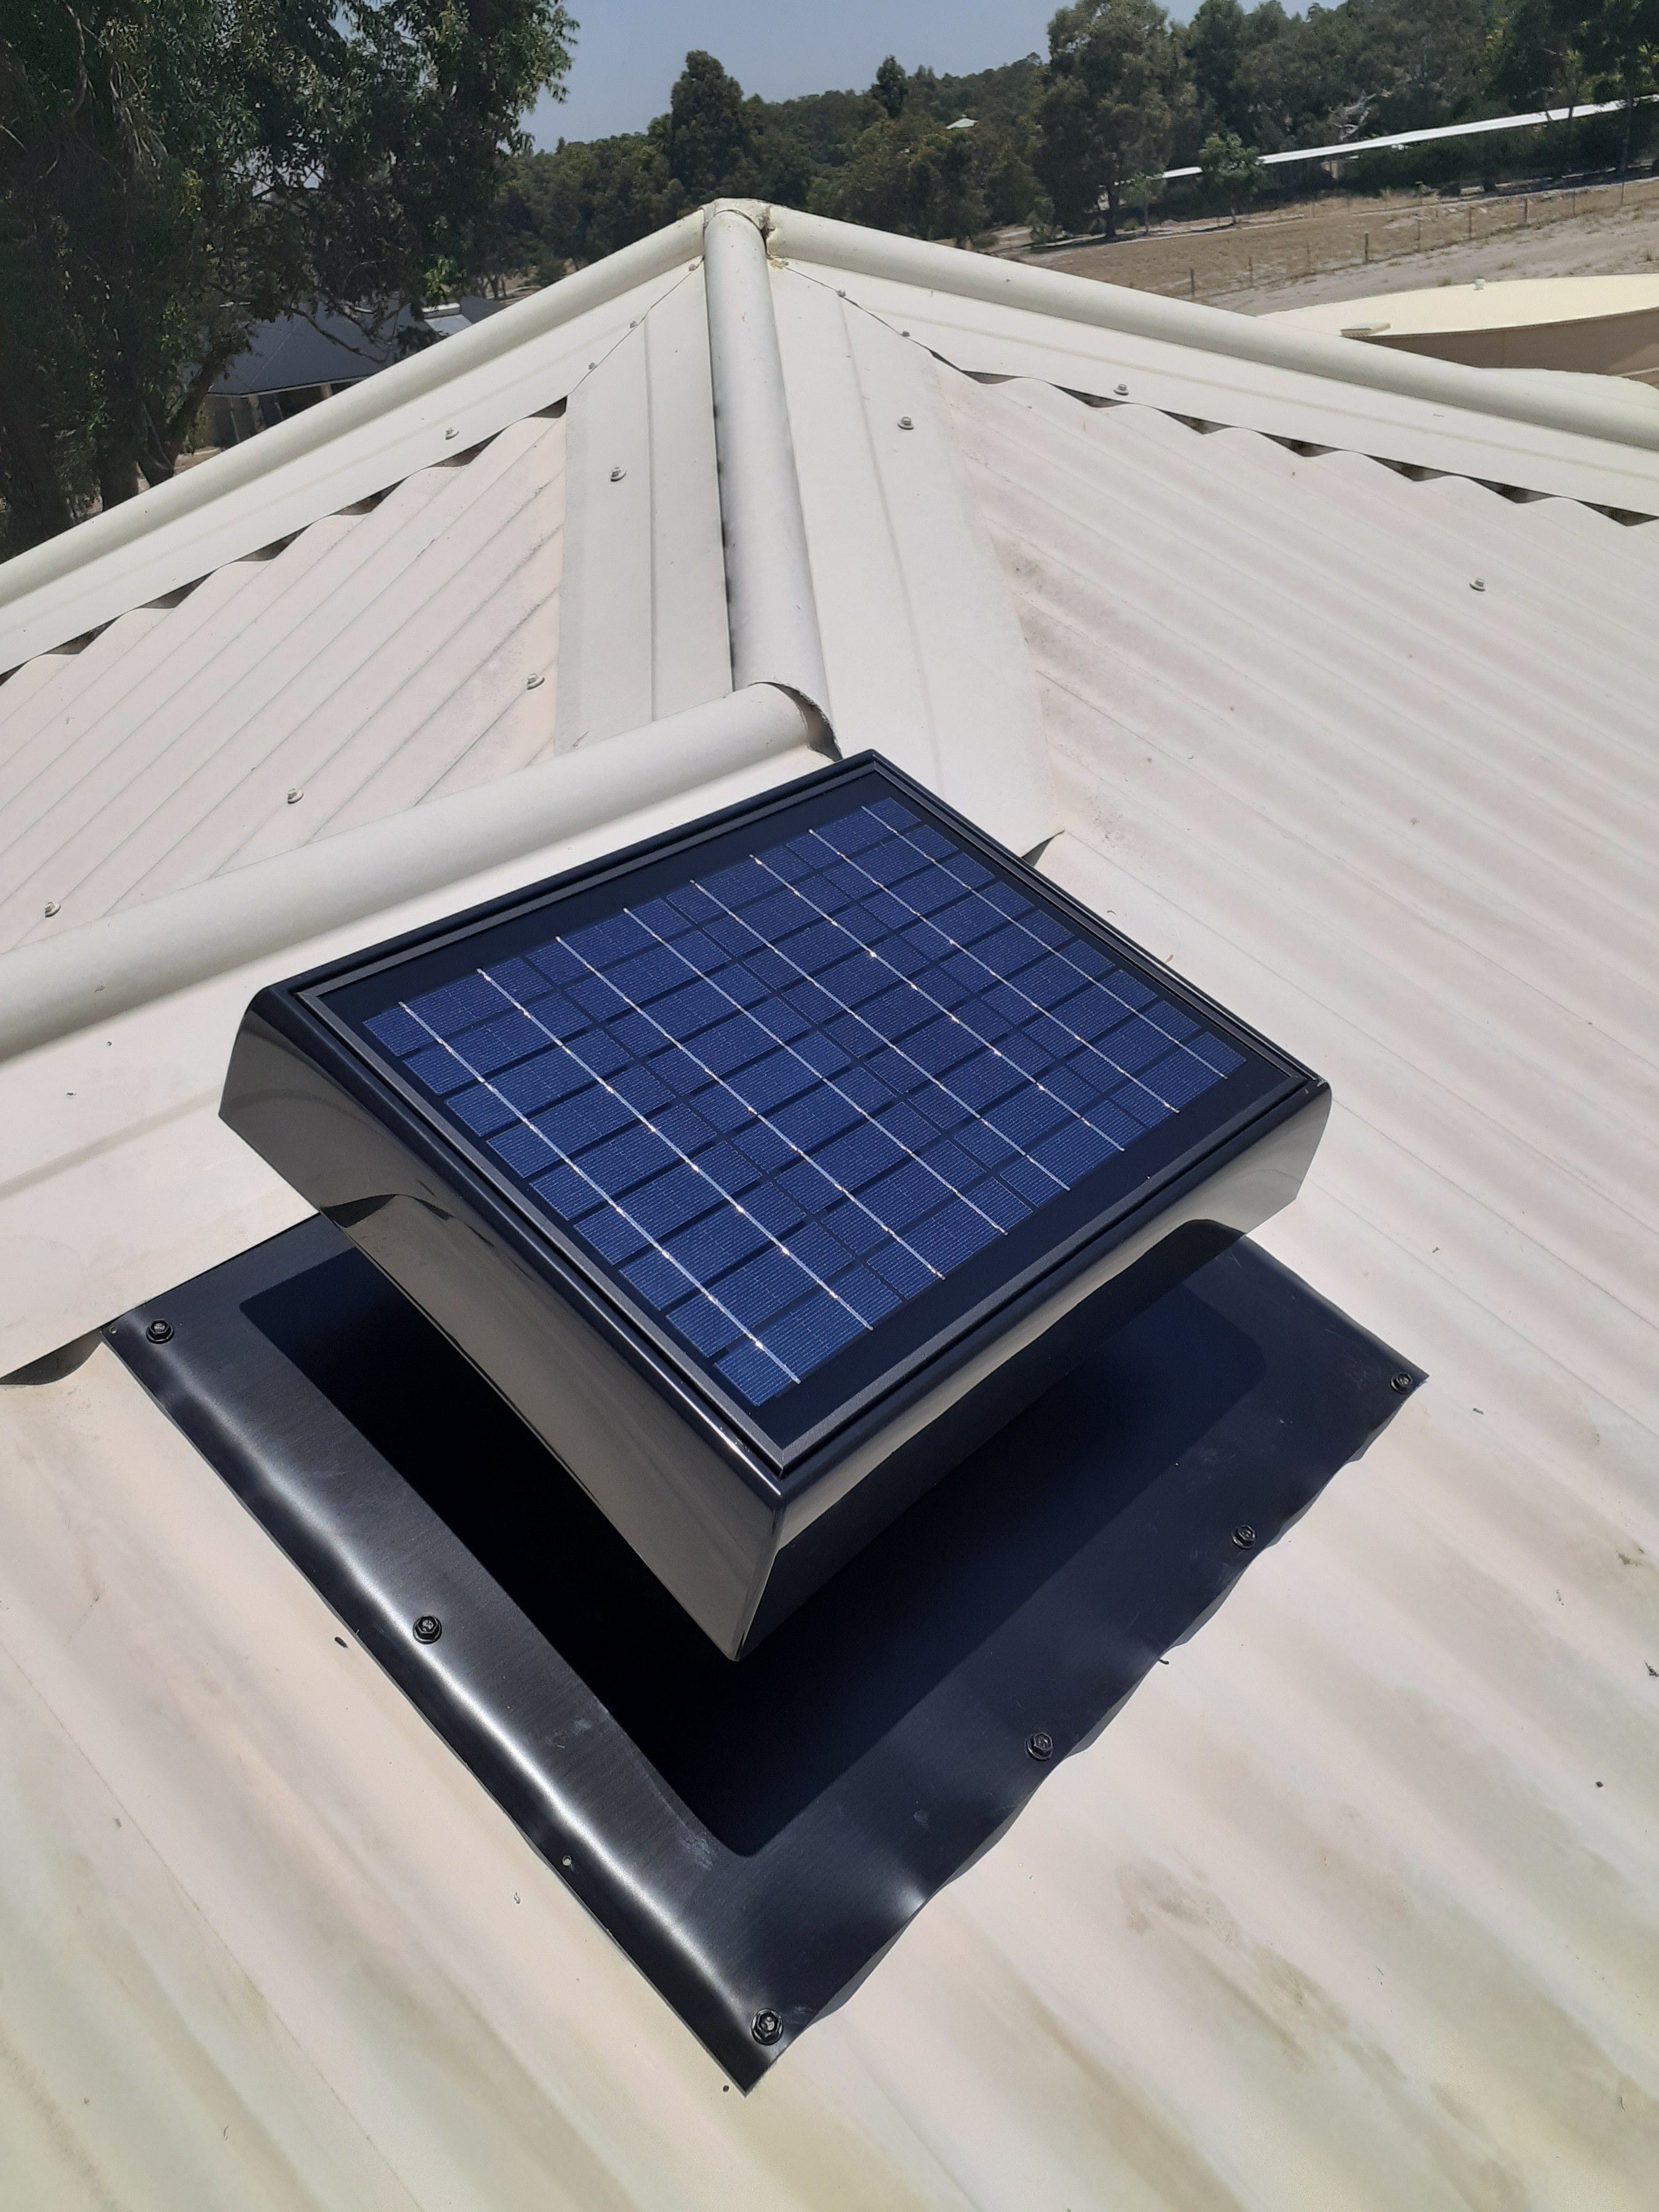 Solar roof ventilation installed over garage